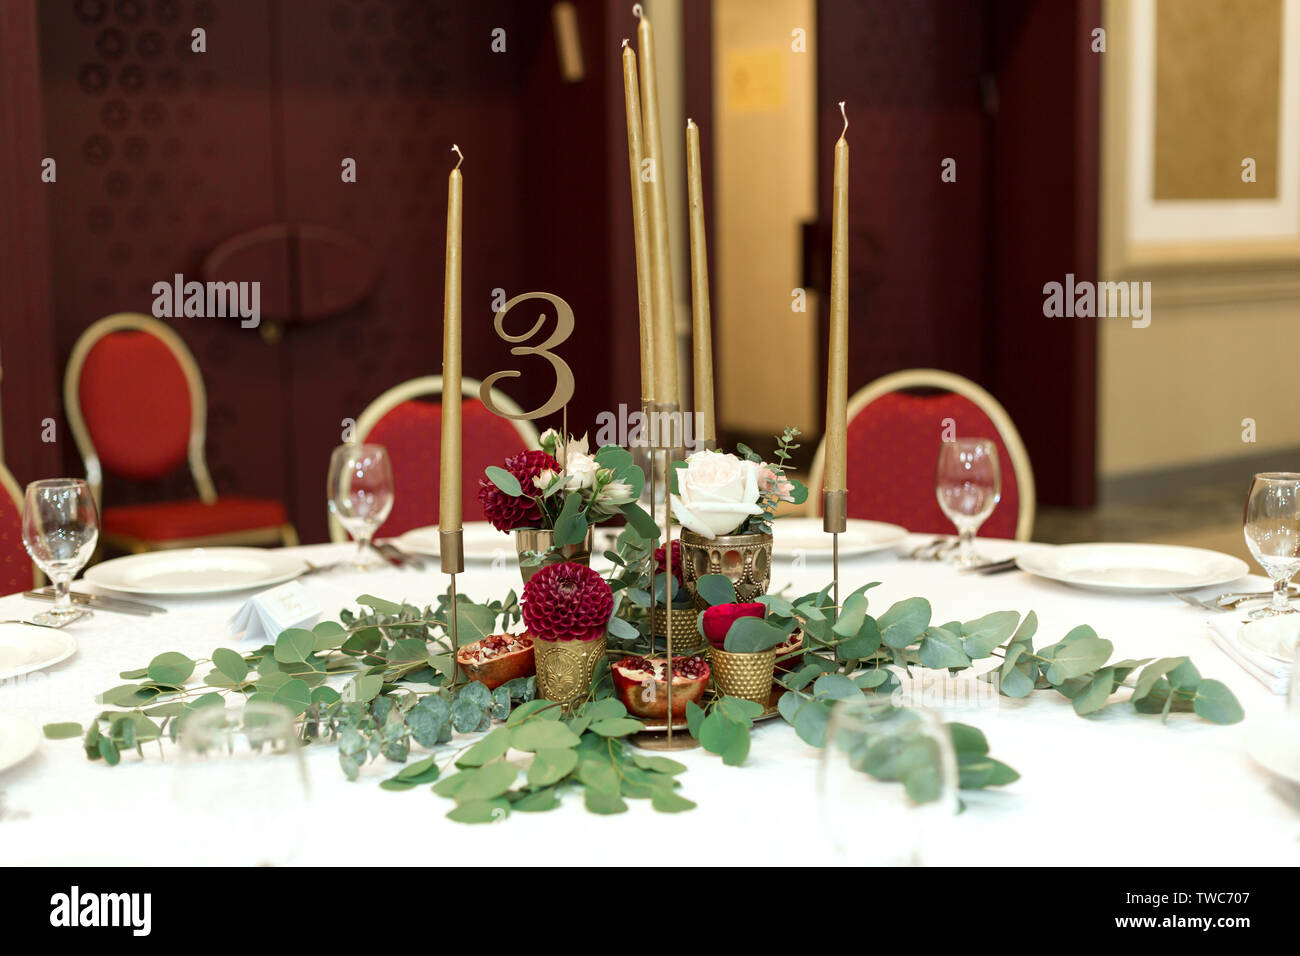 Décoration de fête banquet ronde table dans le restaurant. Les fleurs fraîches sont d'or bougies et des chaises rouges. Cher riches. Banque D'Images